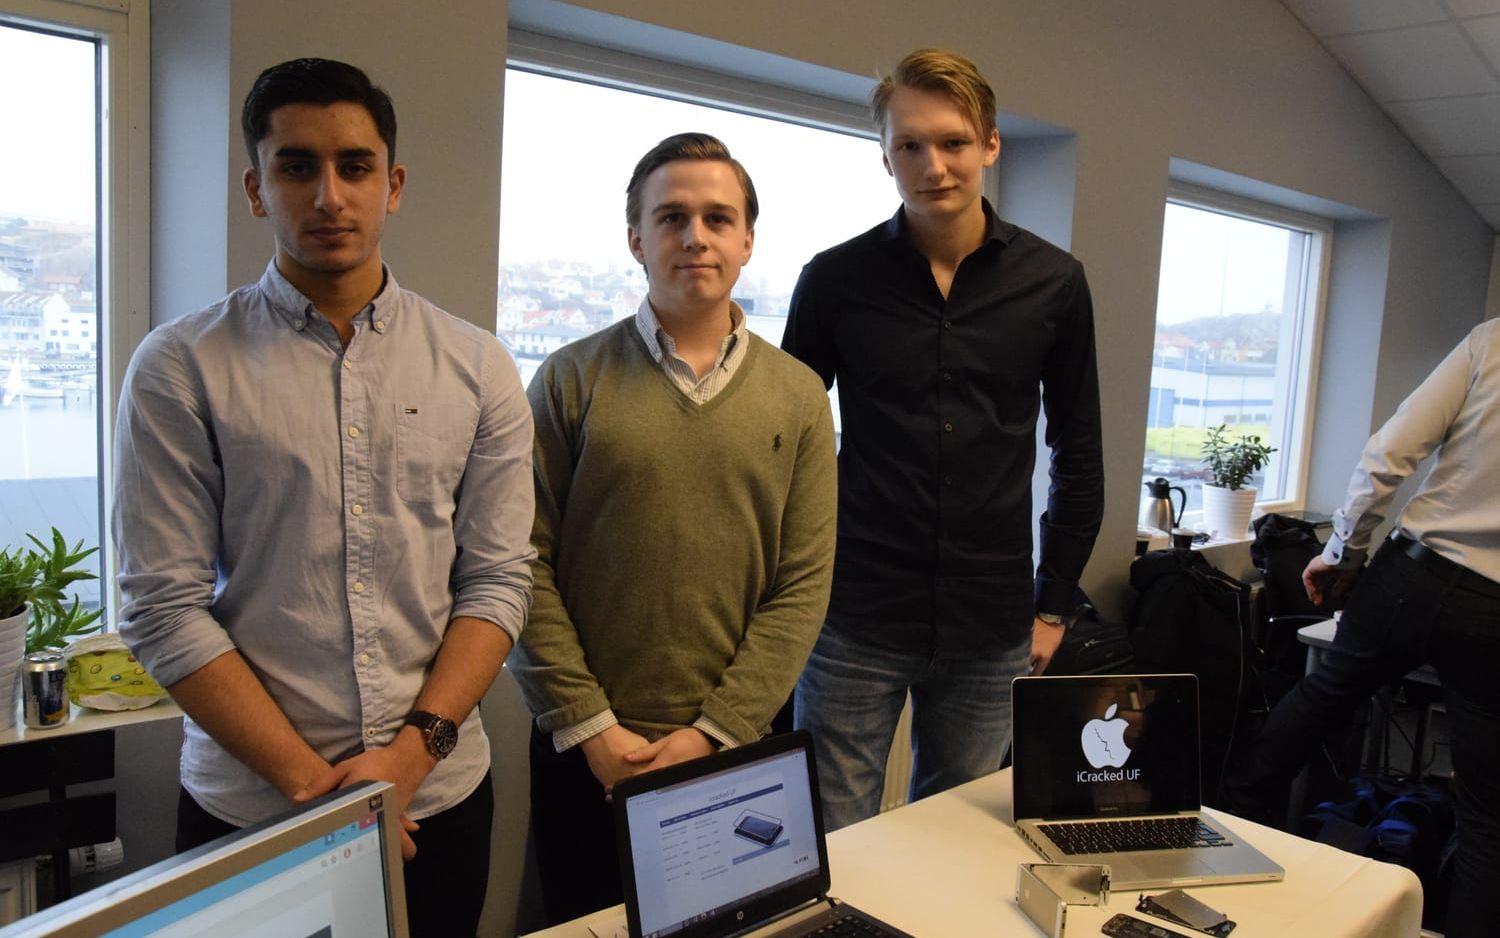 Från vänster Yacoub Ohan, Filip Zubonja och Gabriel Nilsson, tillsammans driver de iCracked UF. Foto: Malin Rindvik